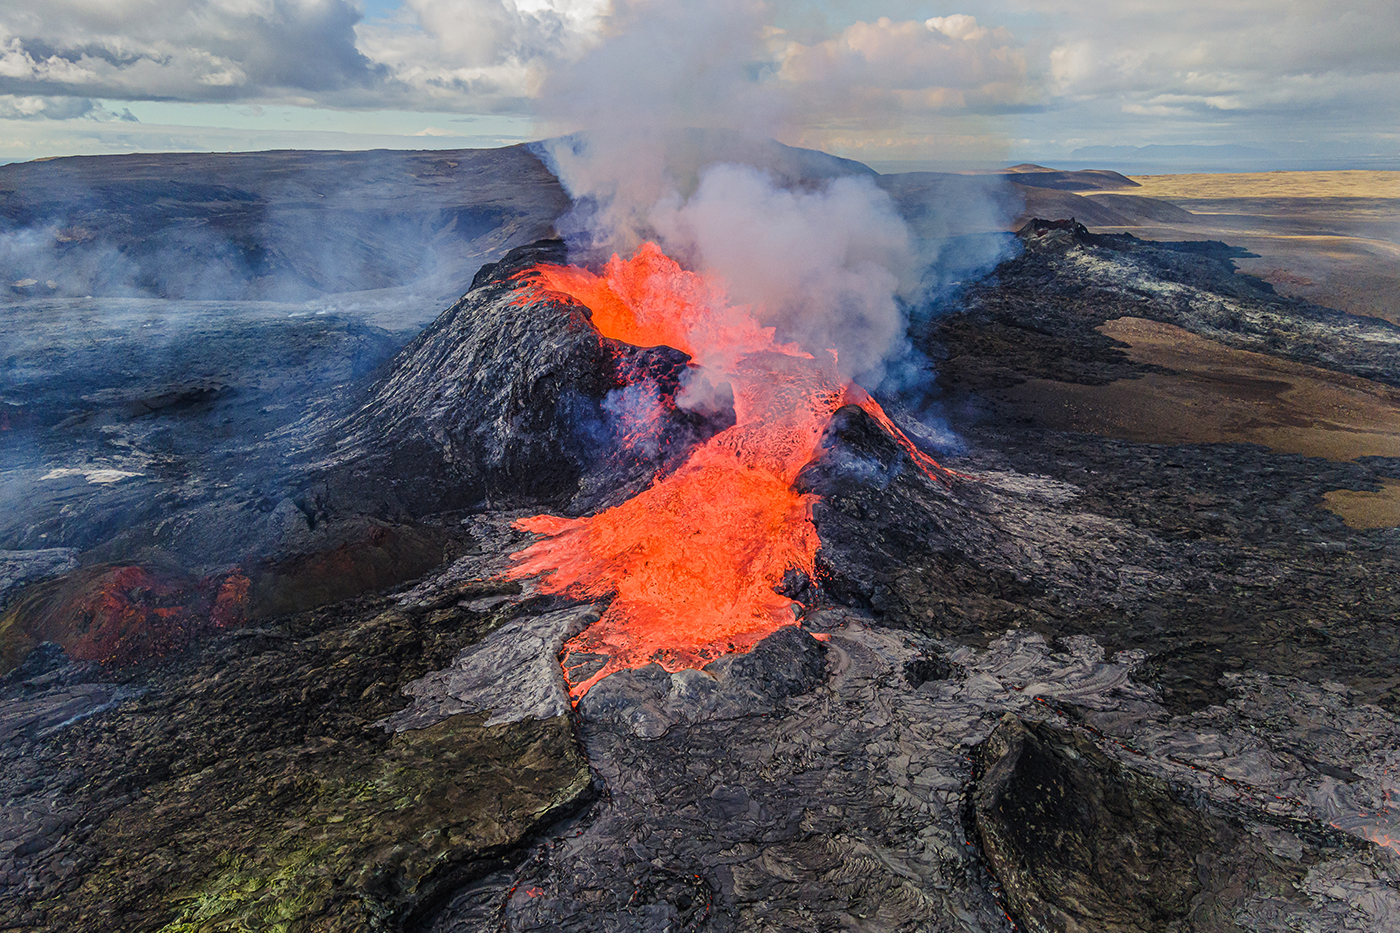 Vulkaanuitbarsting Reykjanes IJsland